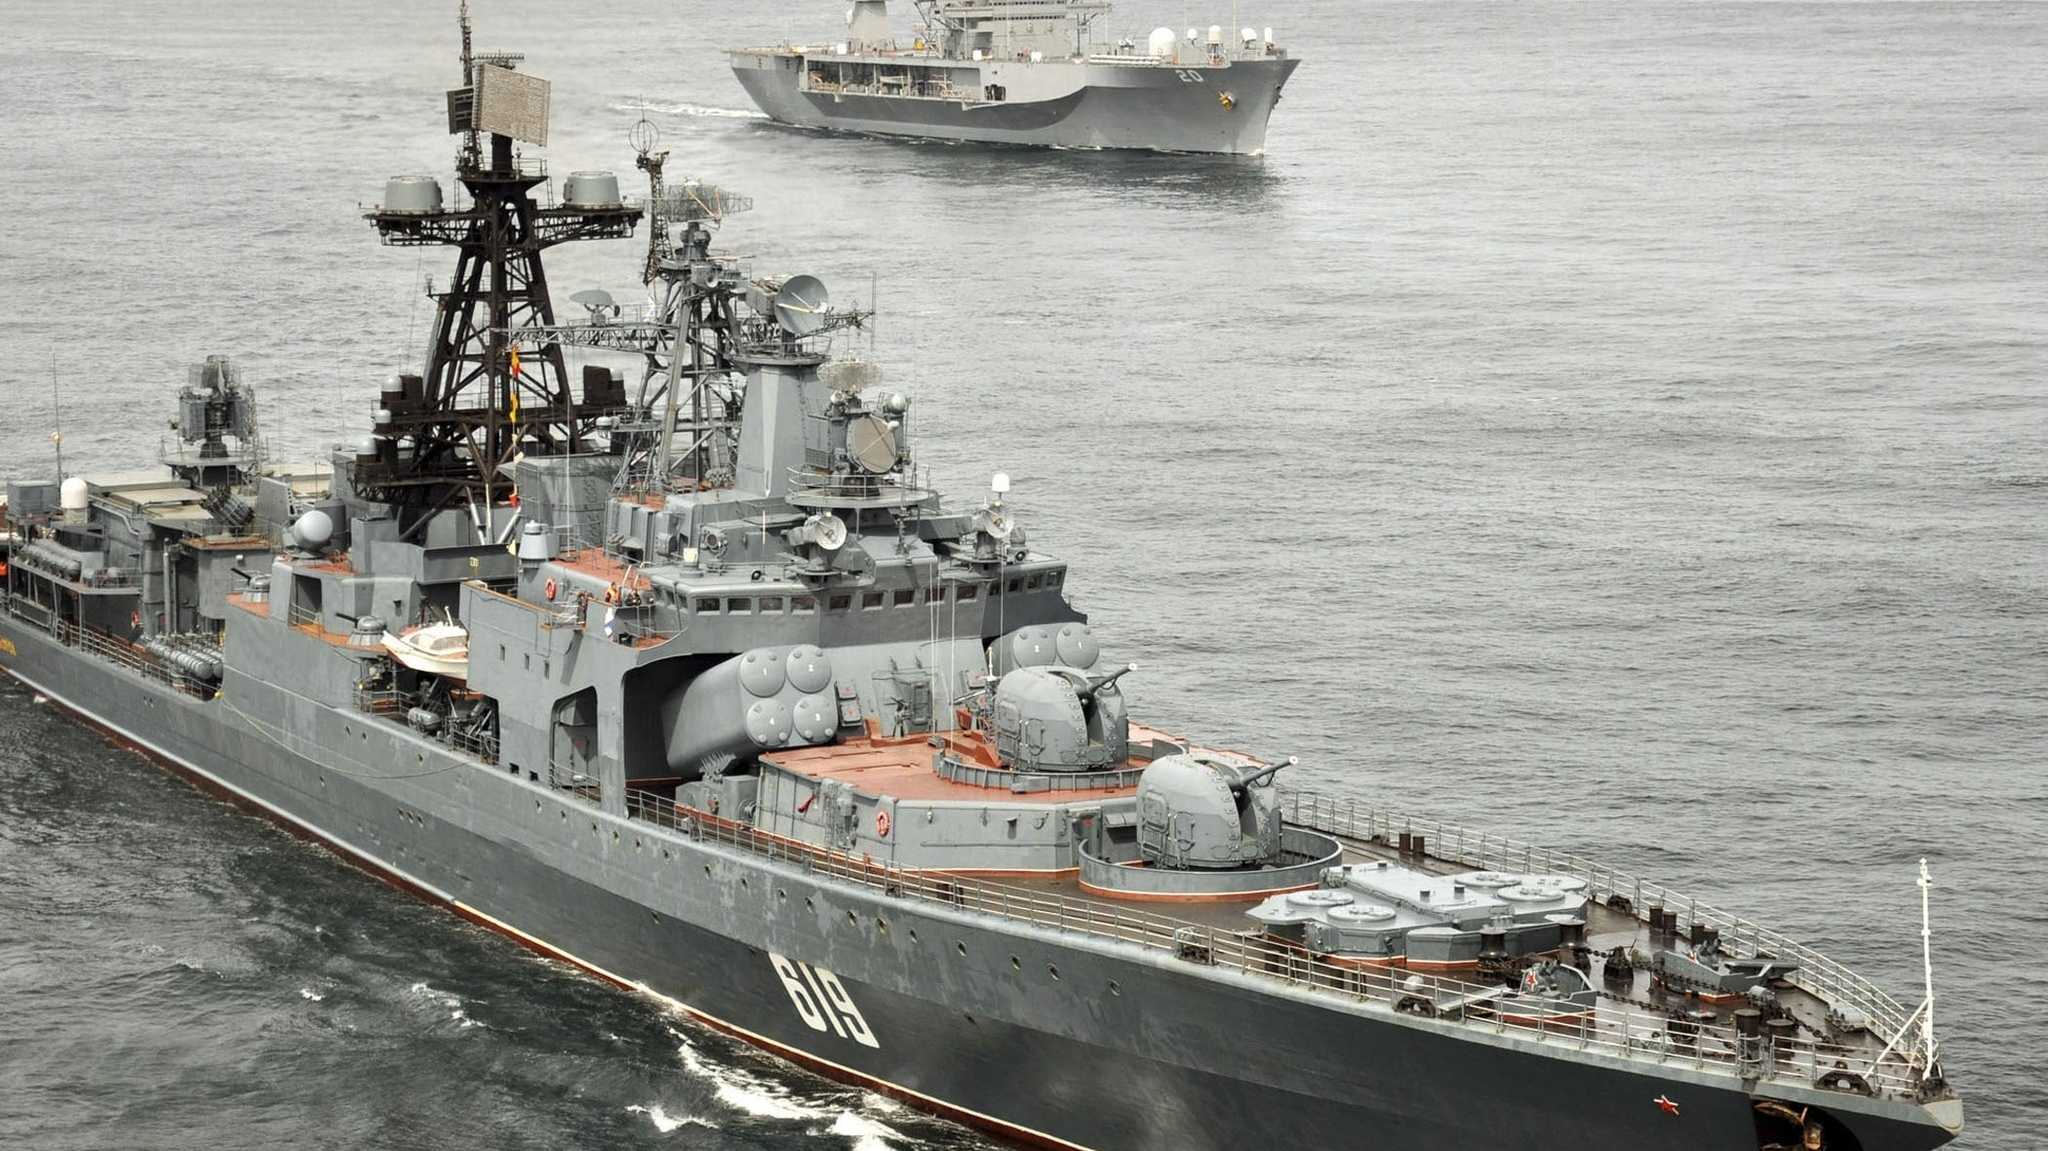 Ukrainische Marine im Einsatz gegen russische Blockade im Schwarzen Meer